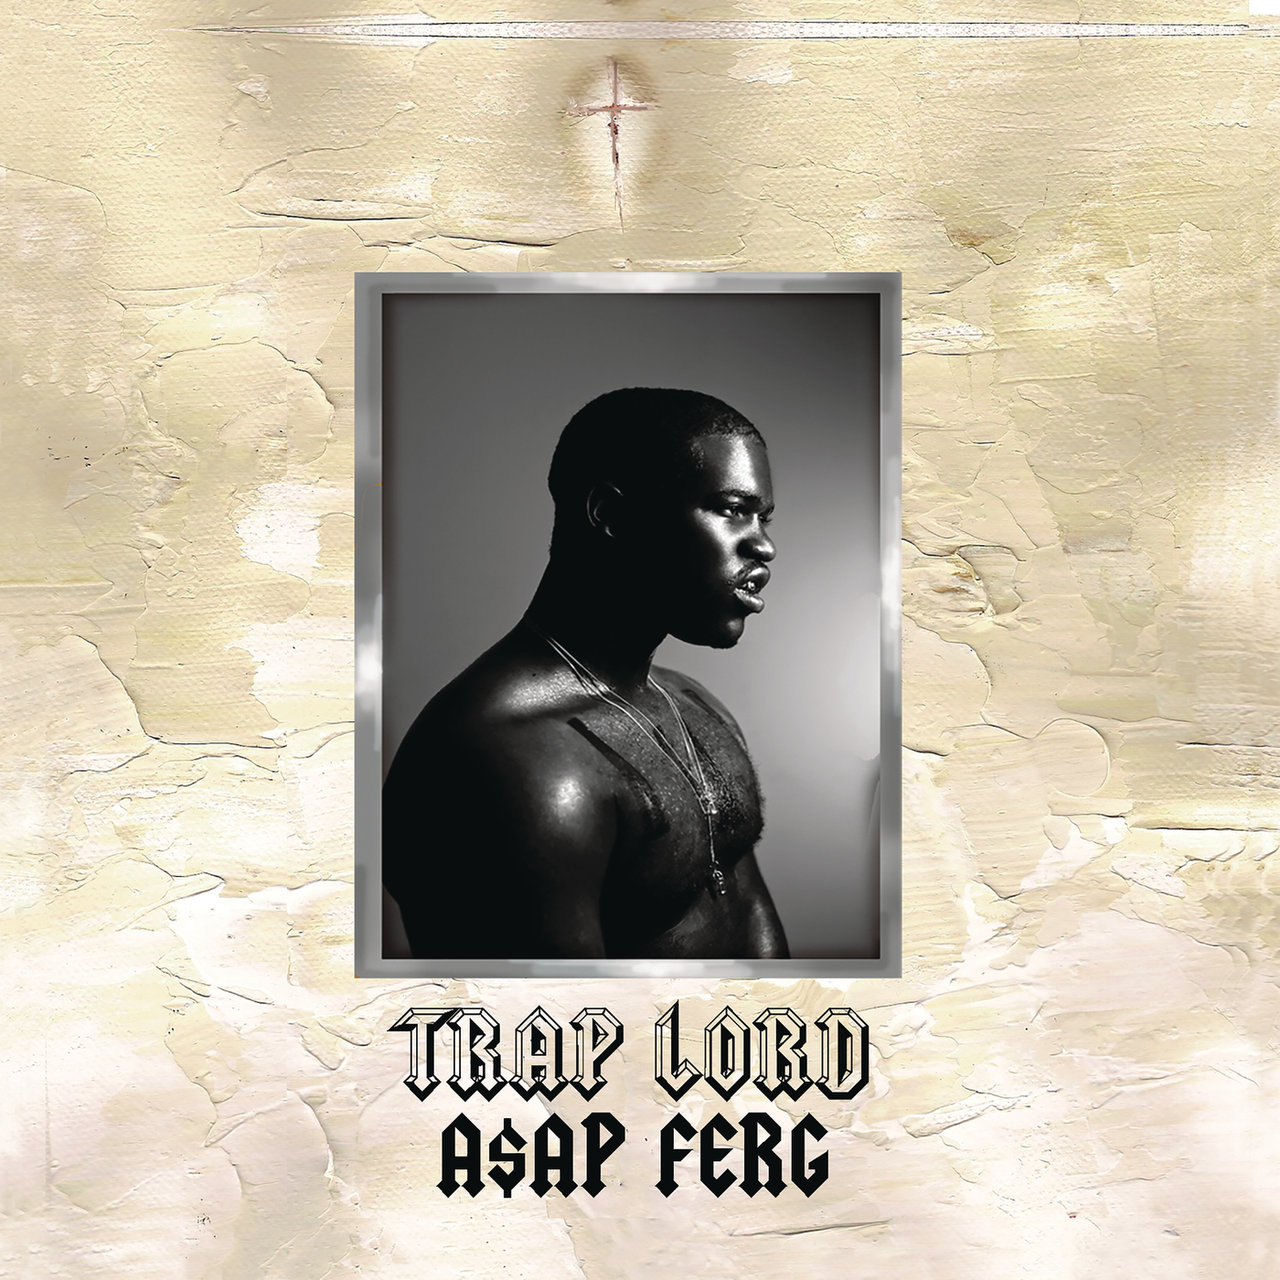 ASAP Ferg - Trap Lord (Cover)